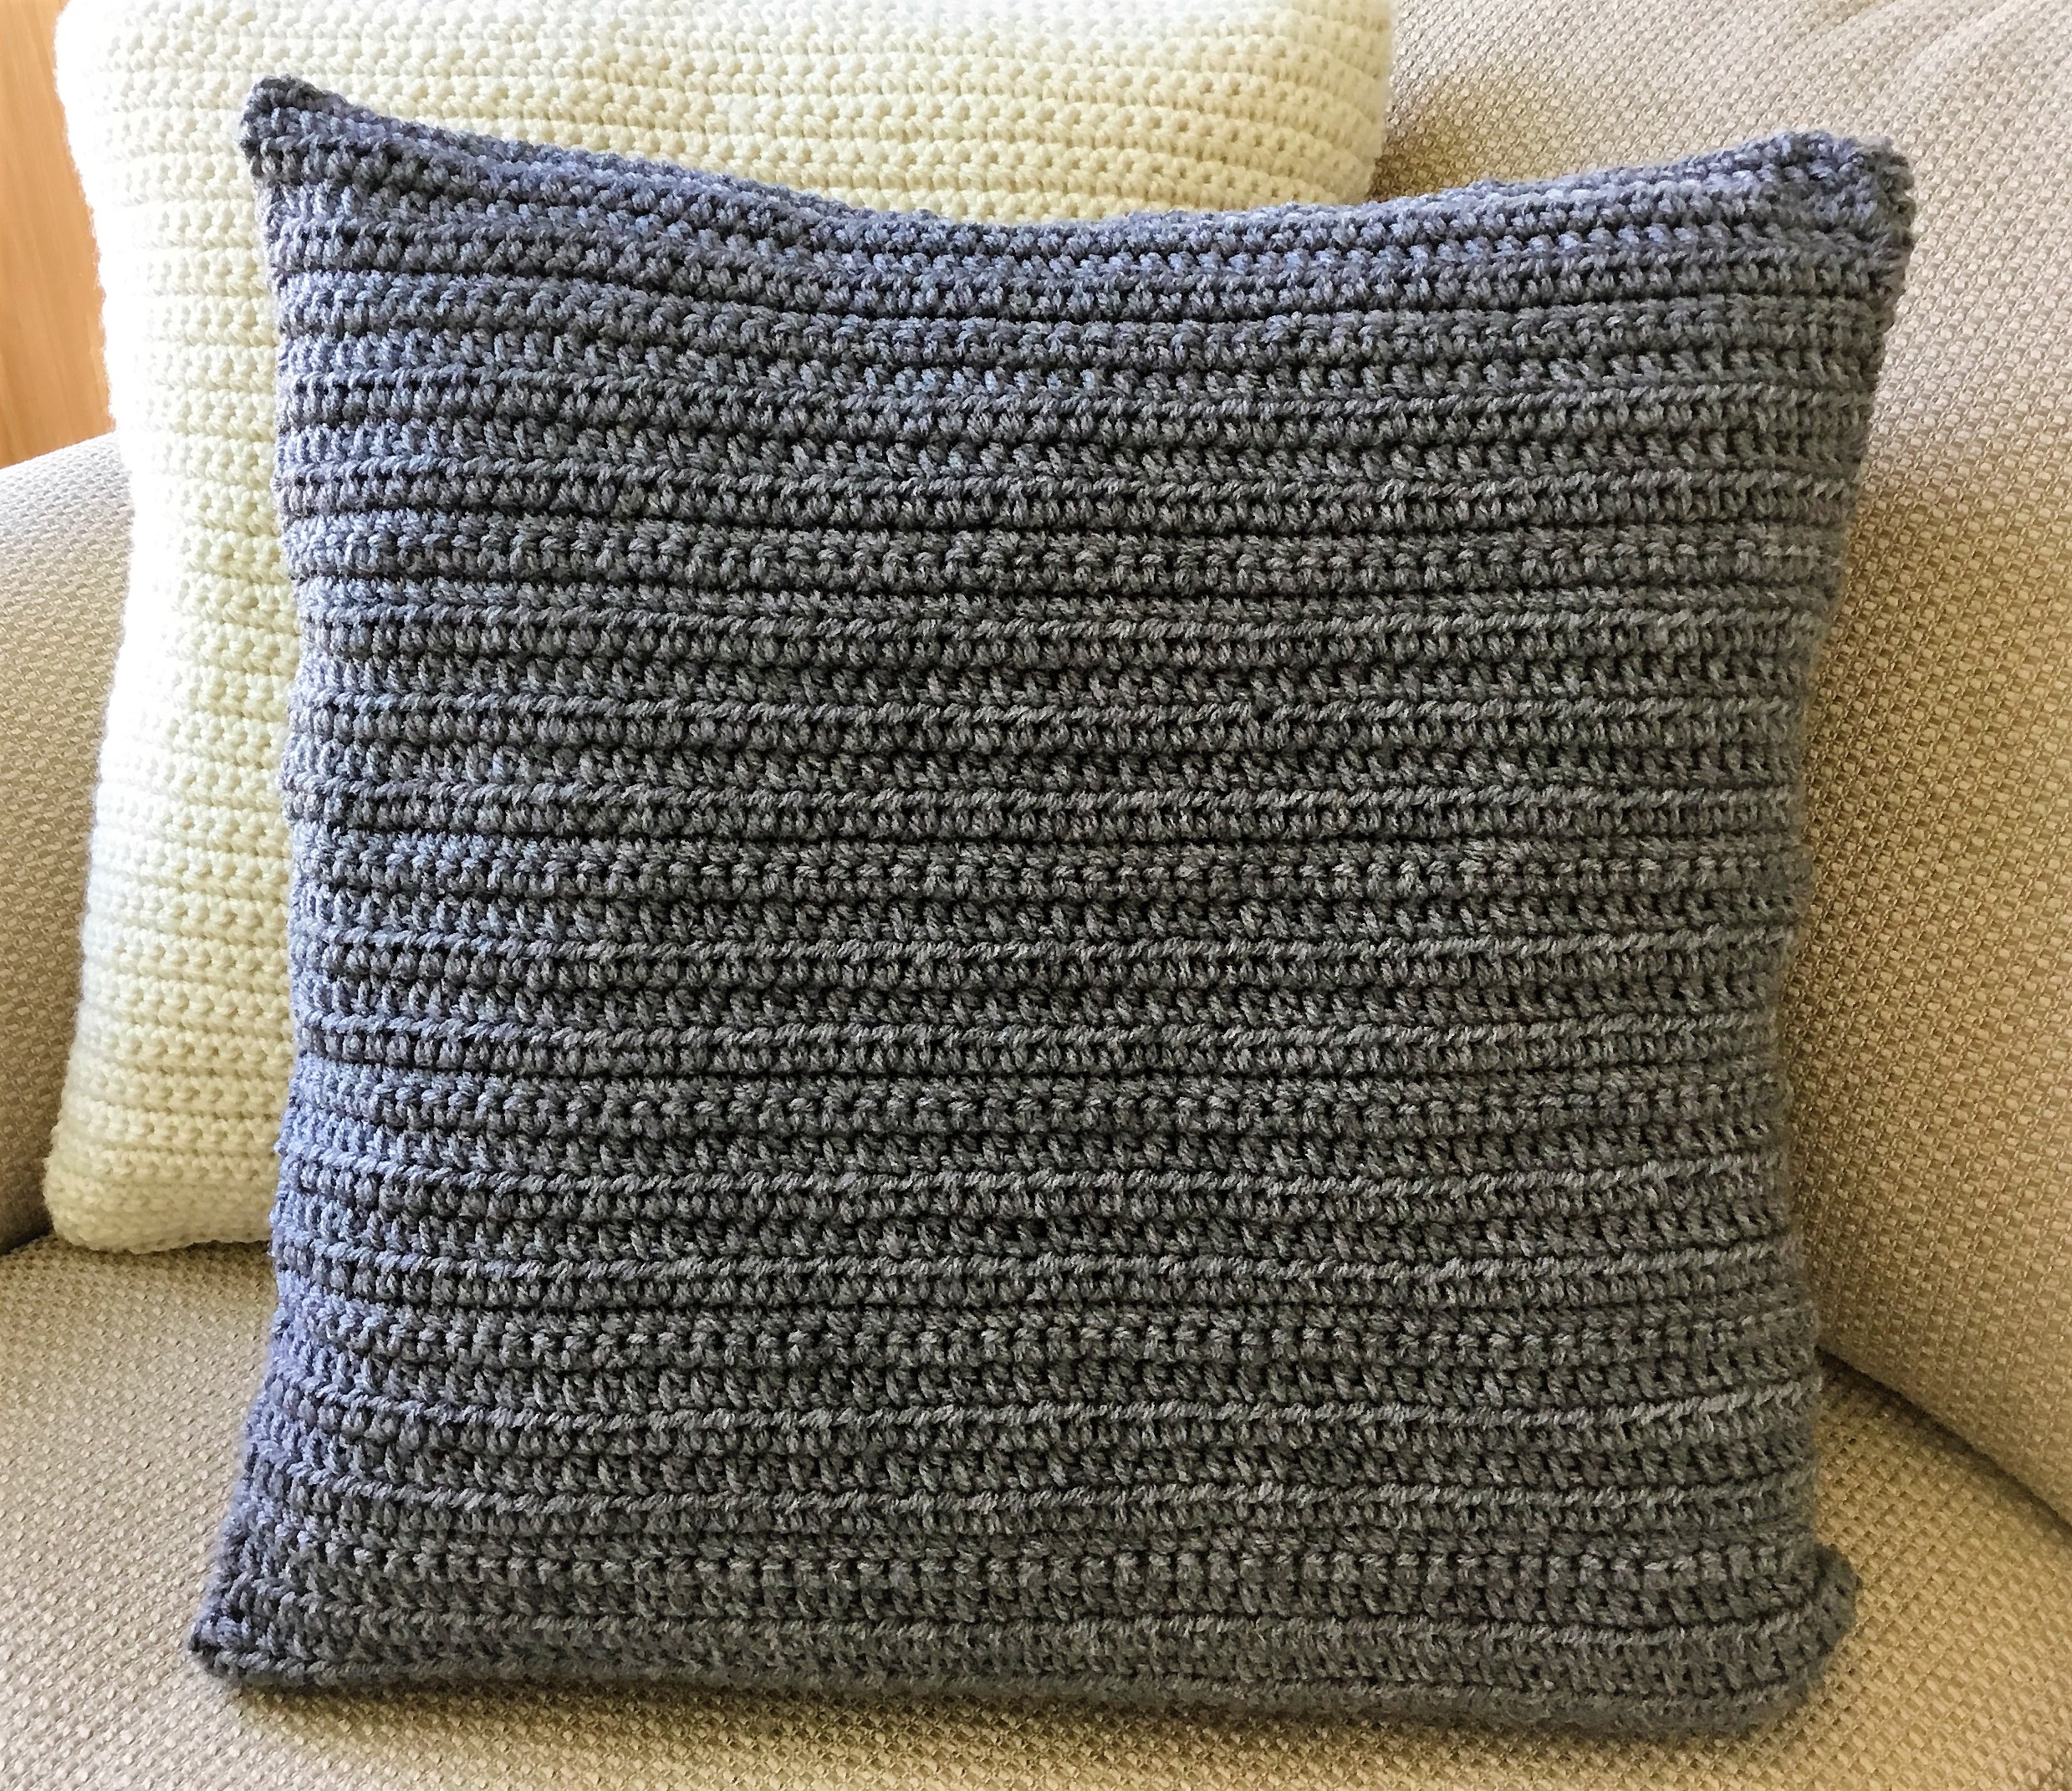 Basket Weave Crochet Pillow - Crazy Cool Crochet